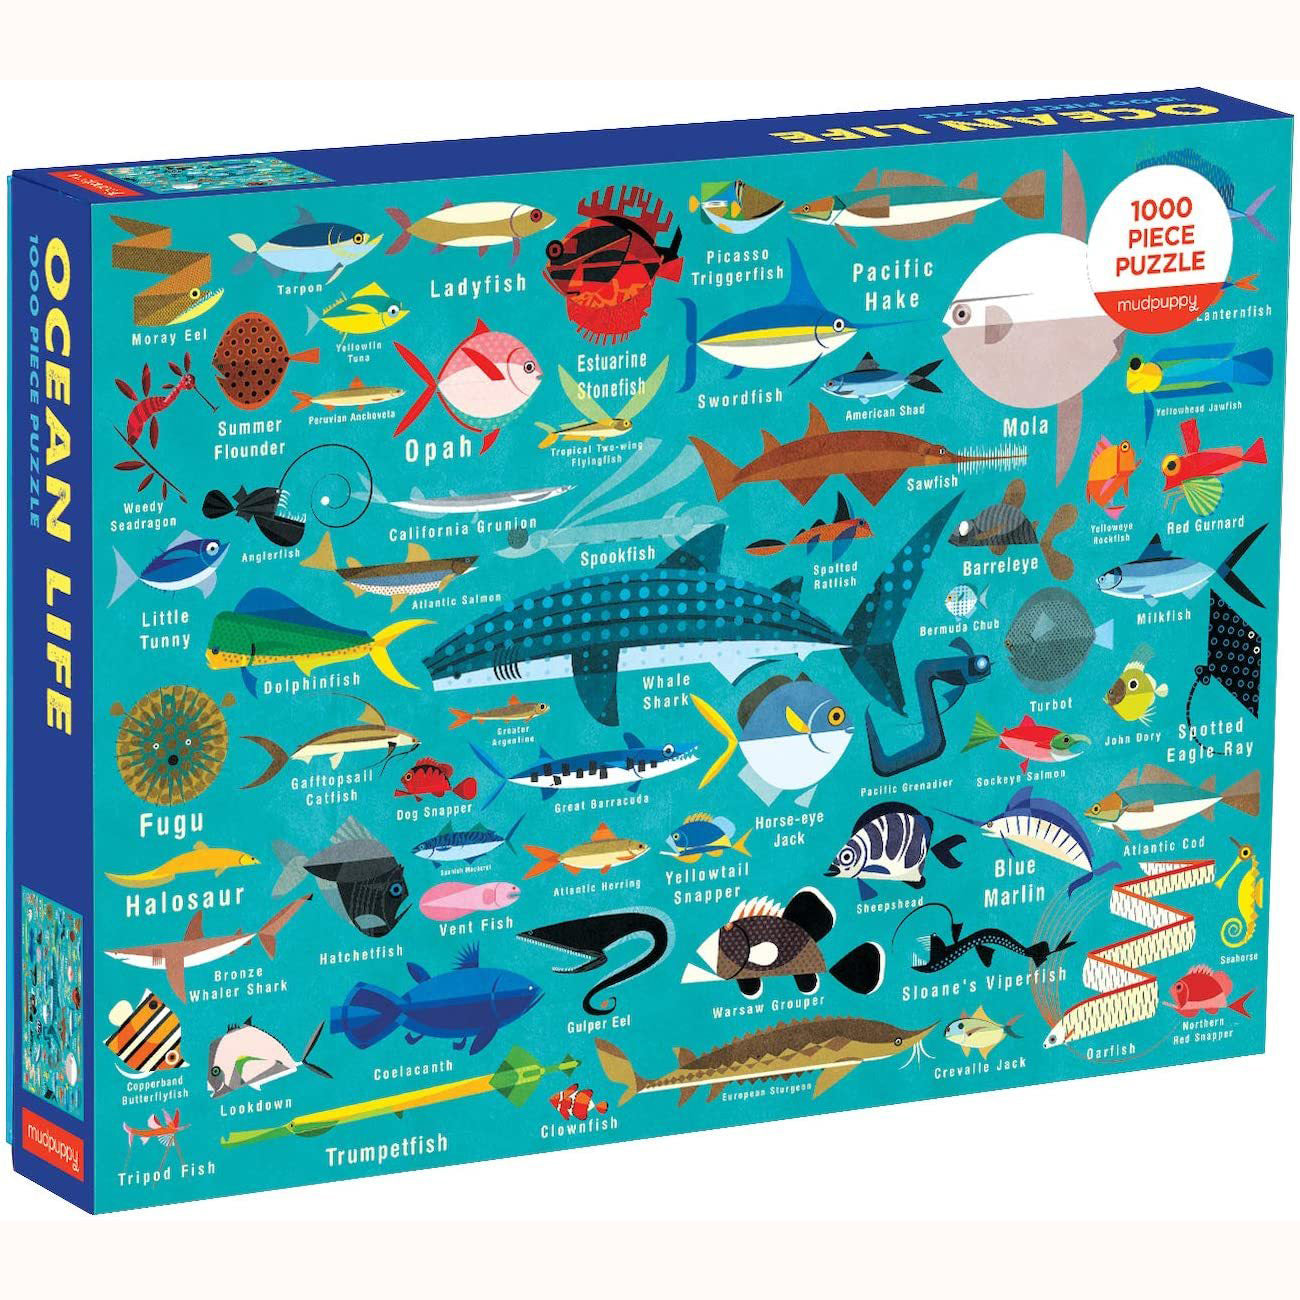 Ocean Life Puzzle - 1000 pieces, After Alice